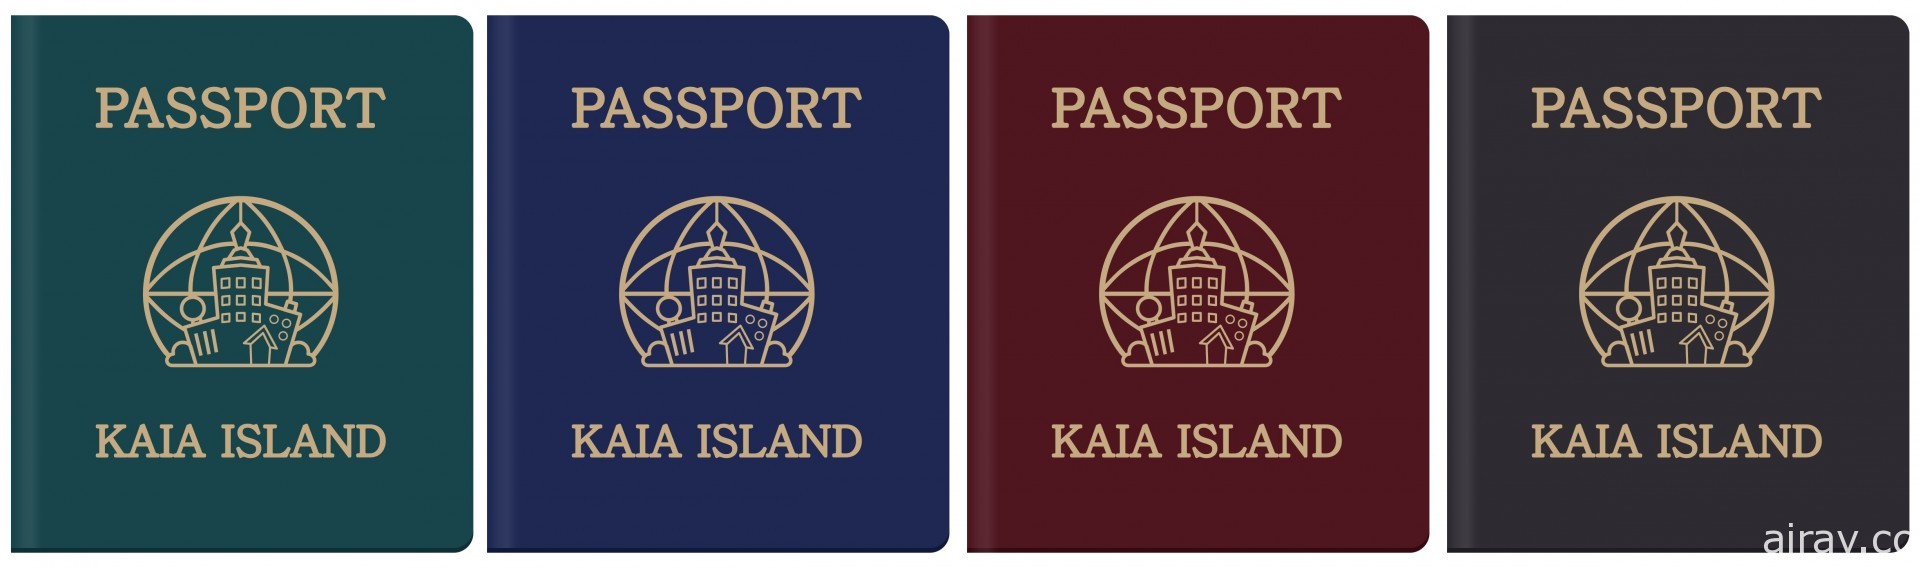 《天天玩樂園》進行迎夏改版 追加「護照」要素及各種獎勵系統